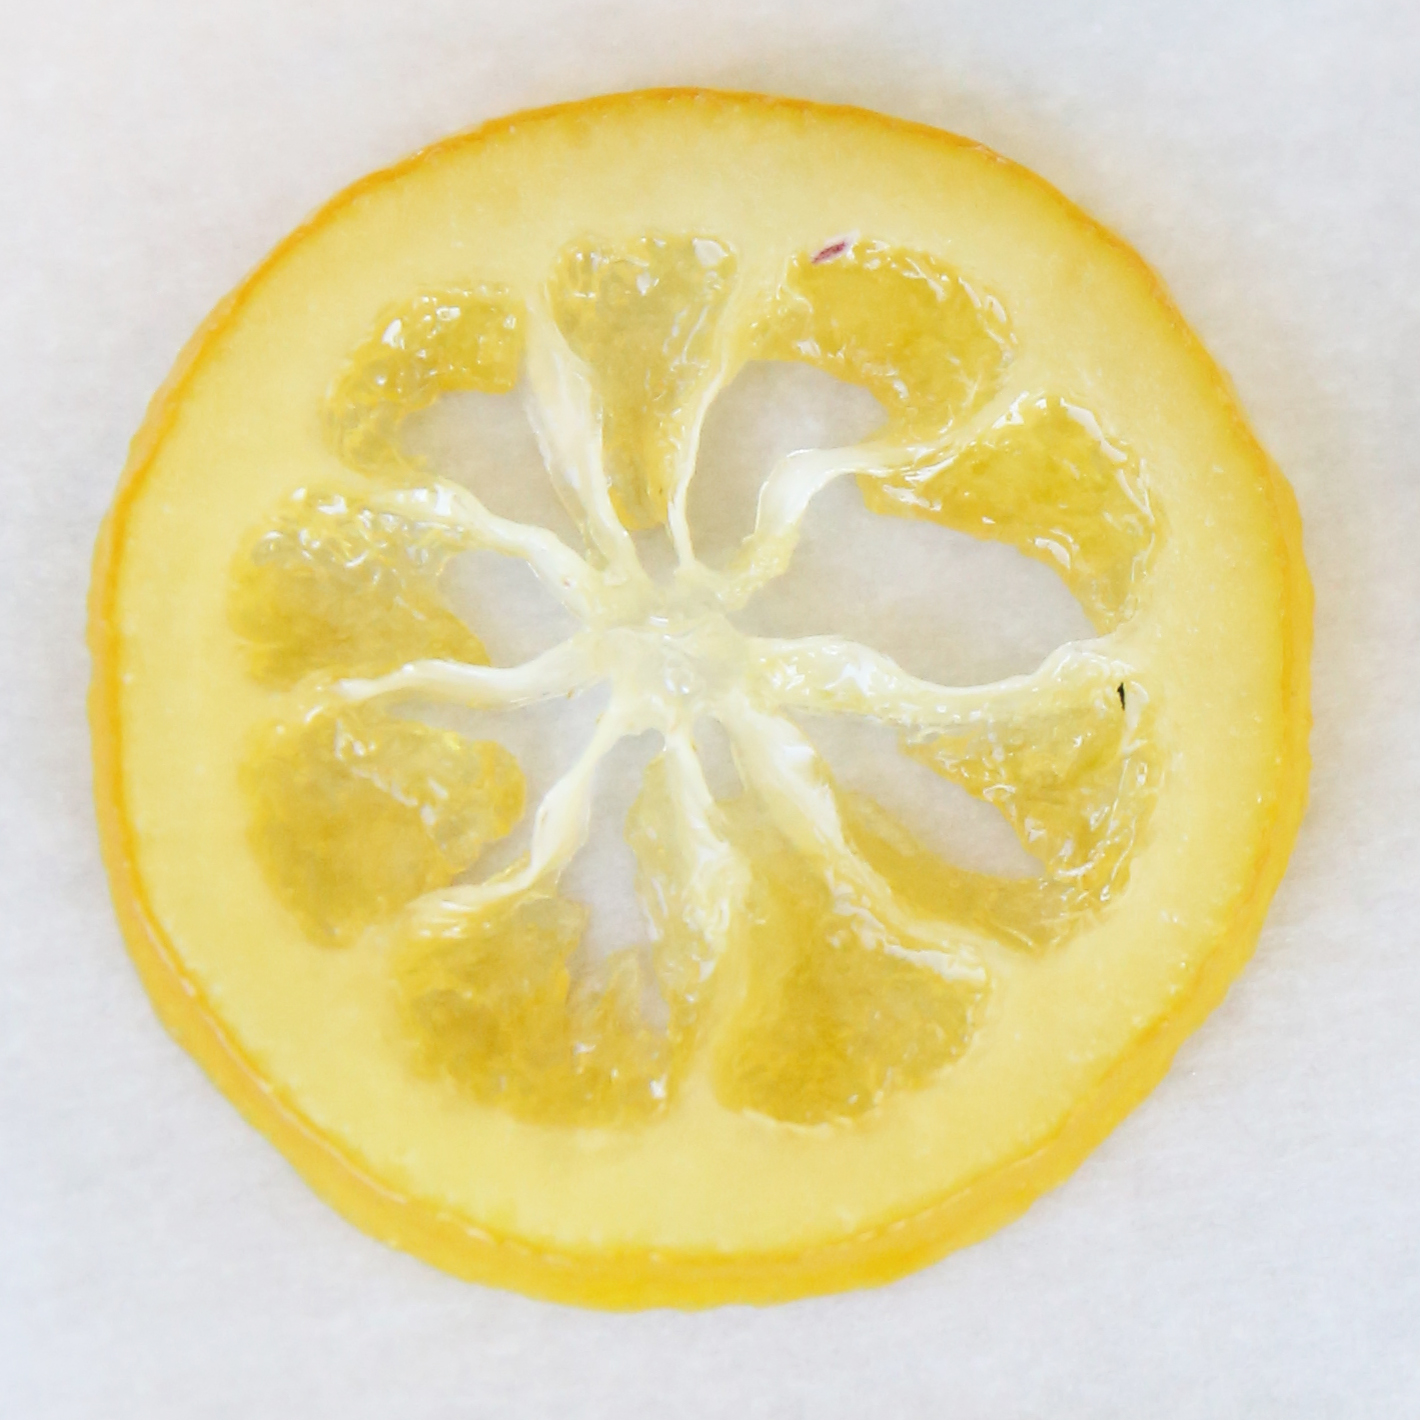 lemon dipped in sugar